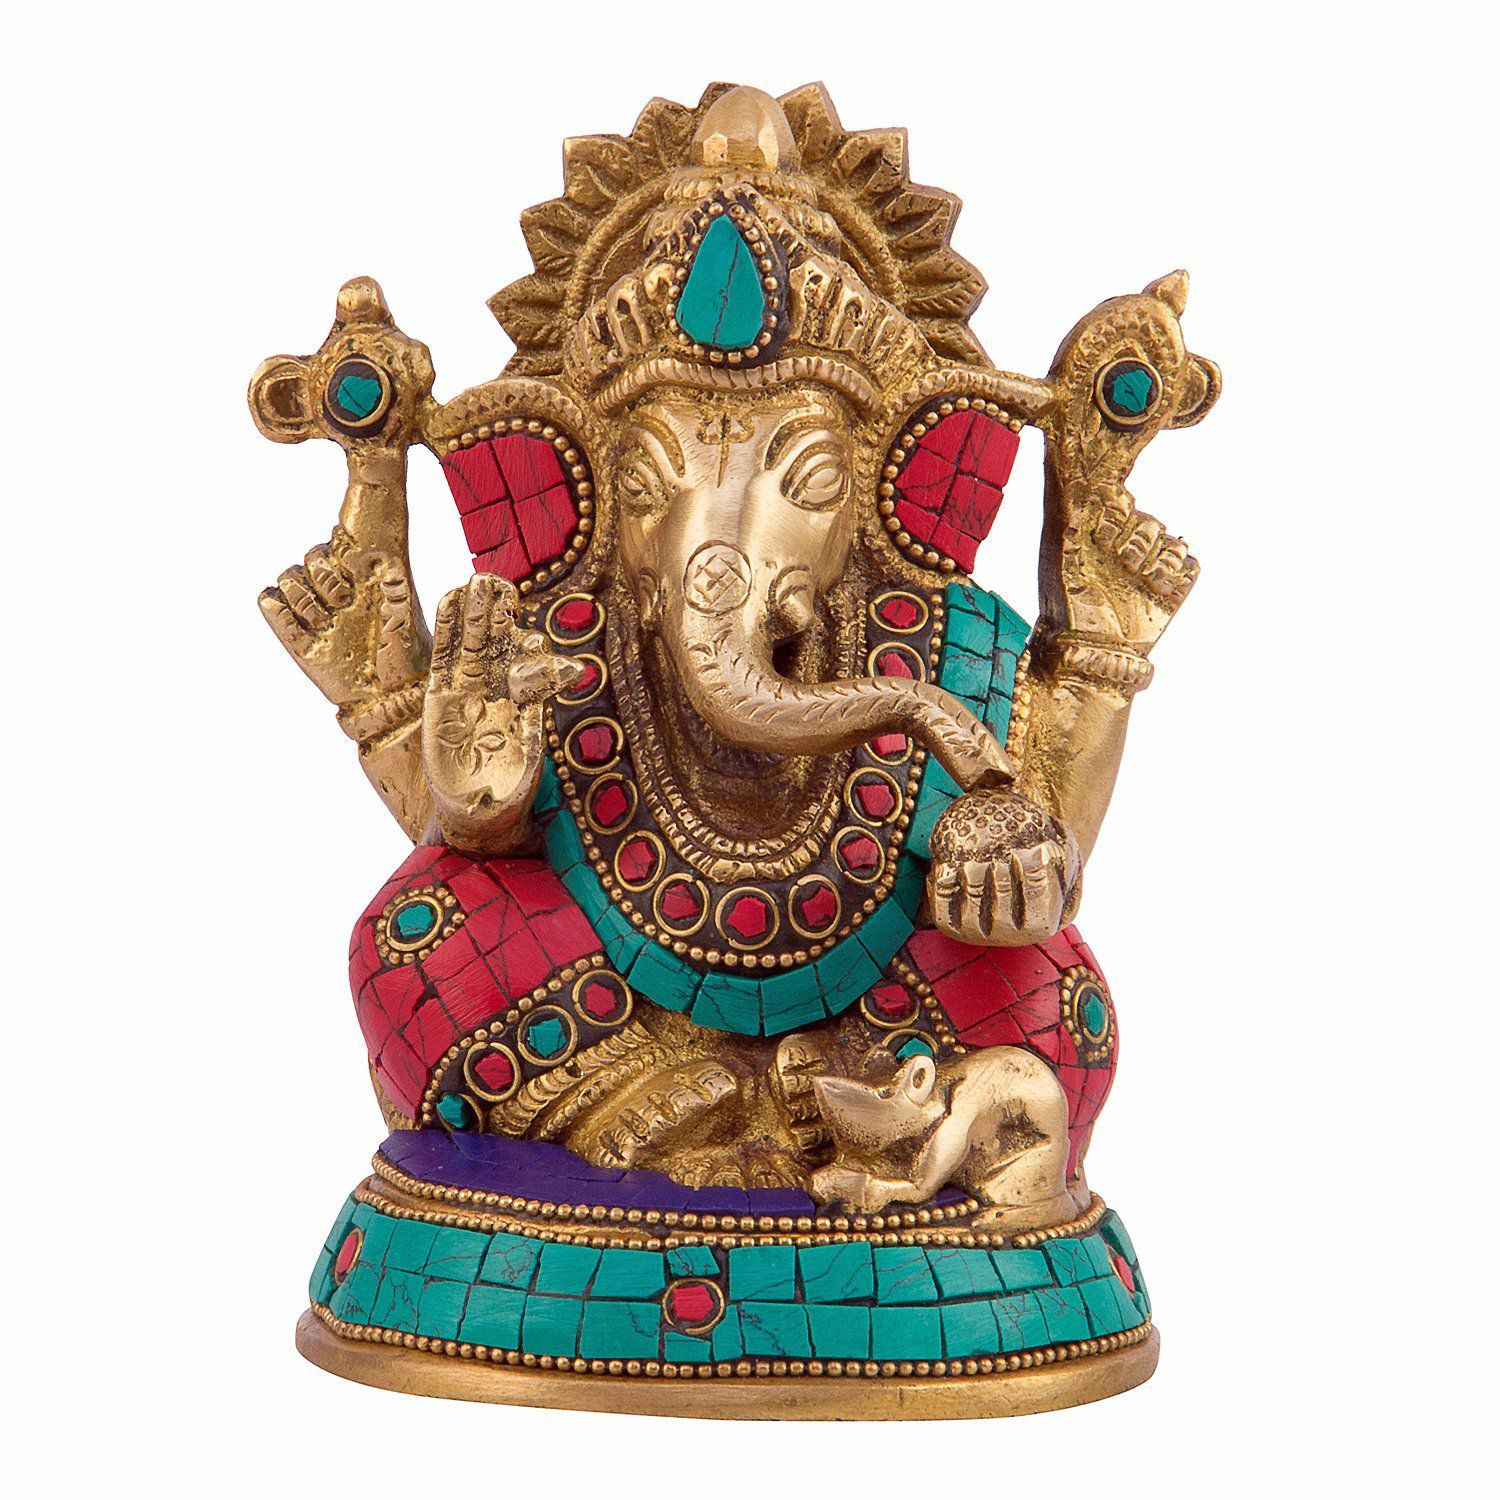 Kartique Ganesha Brass Idol Buy Kartique Ganesha Brass Idol At Best Price In India On Snapdeal 1561